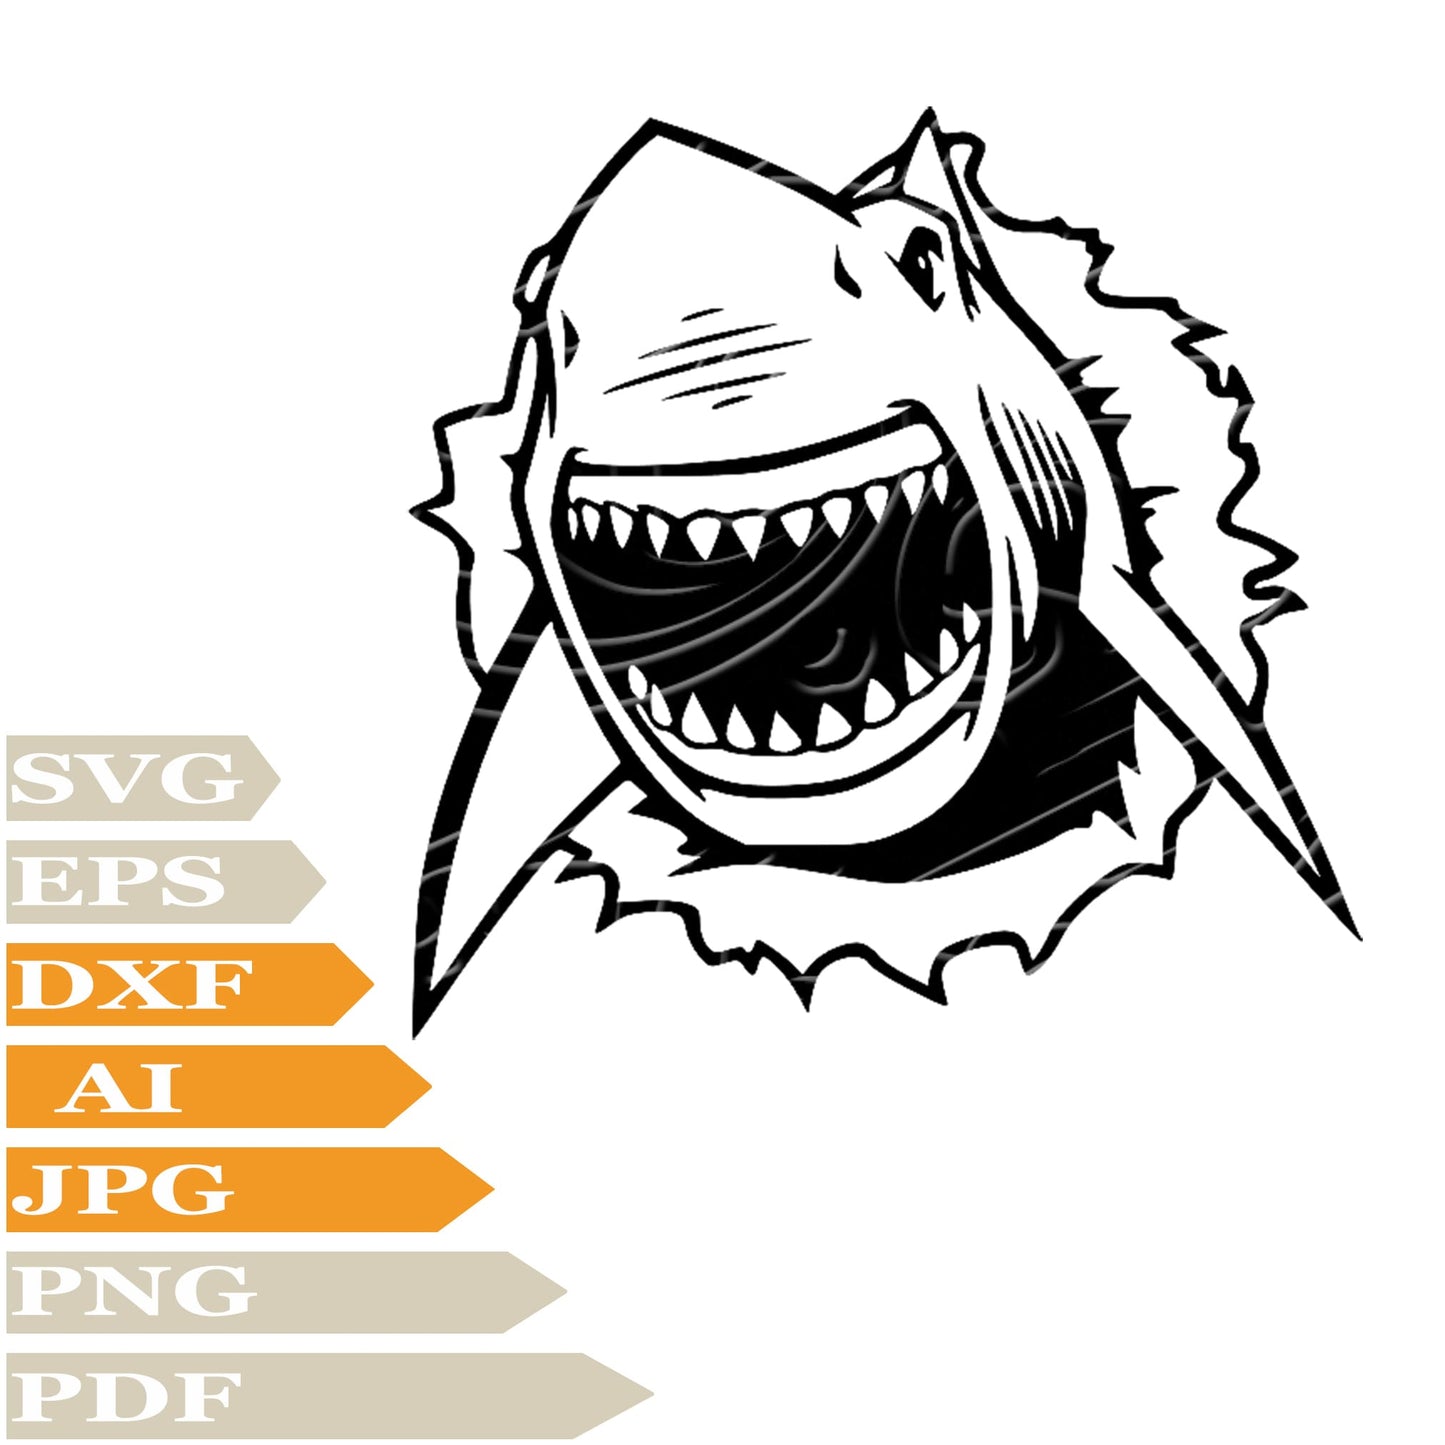 Shark Svg File, Angry Shark Svg Design, White Shark Png, Wild Animals Svg File, Angry Shark Vector Graphics, Shark Svg For Tattoo, White Shark Svg For Cricut